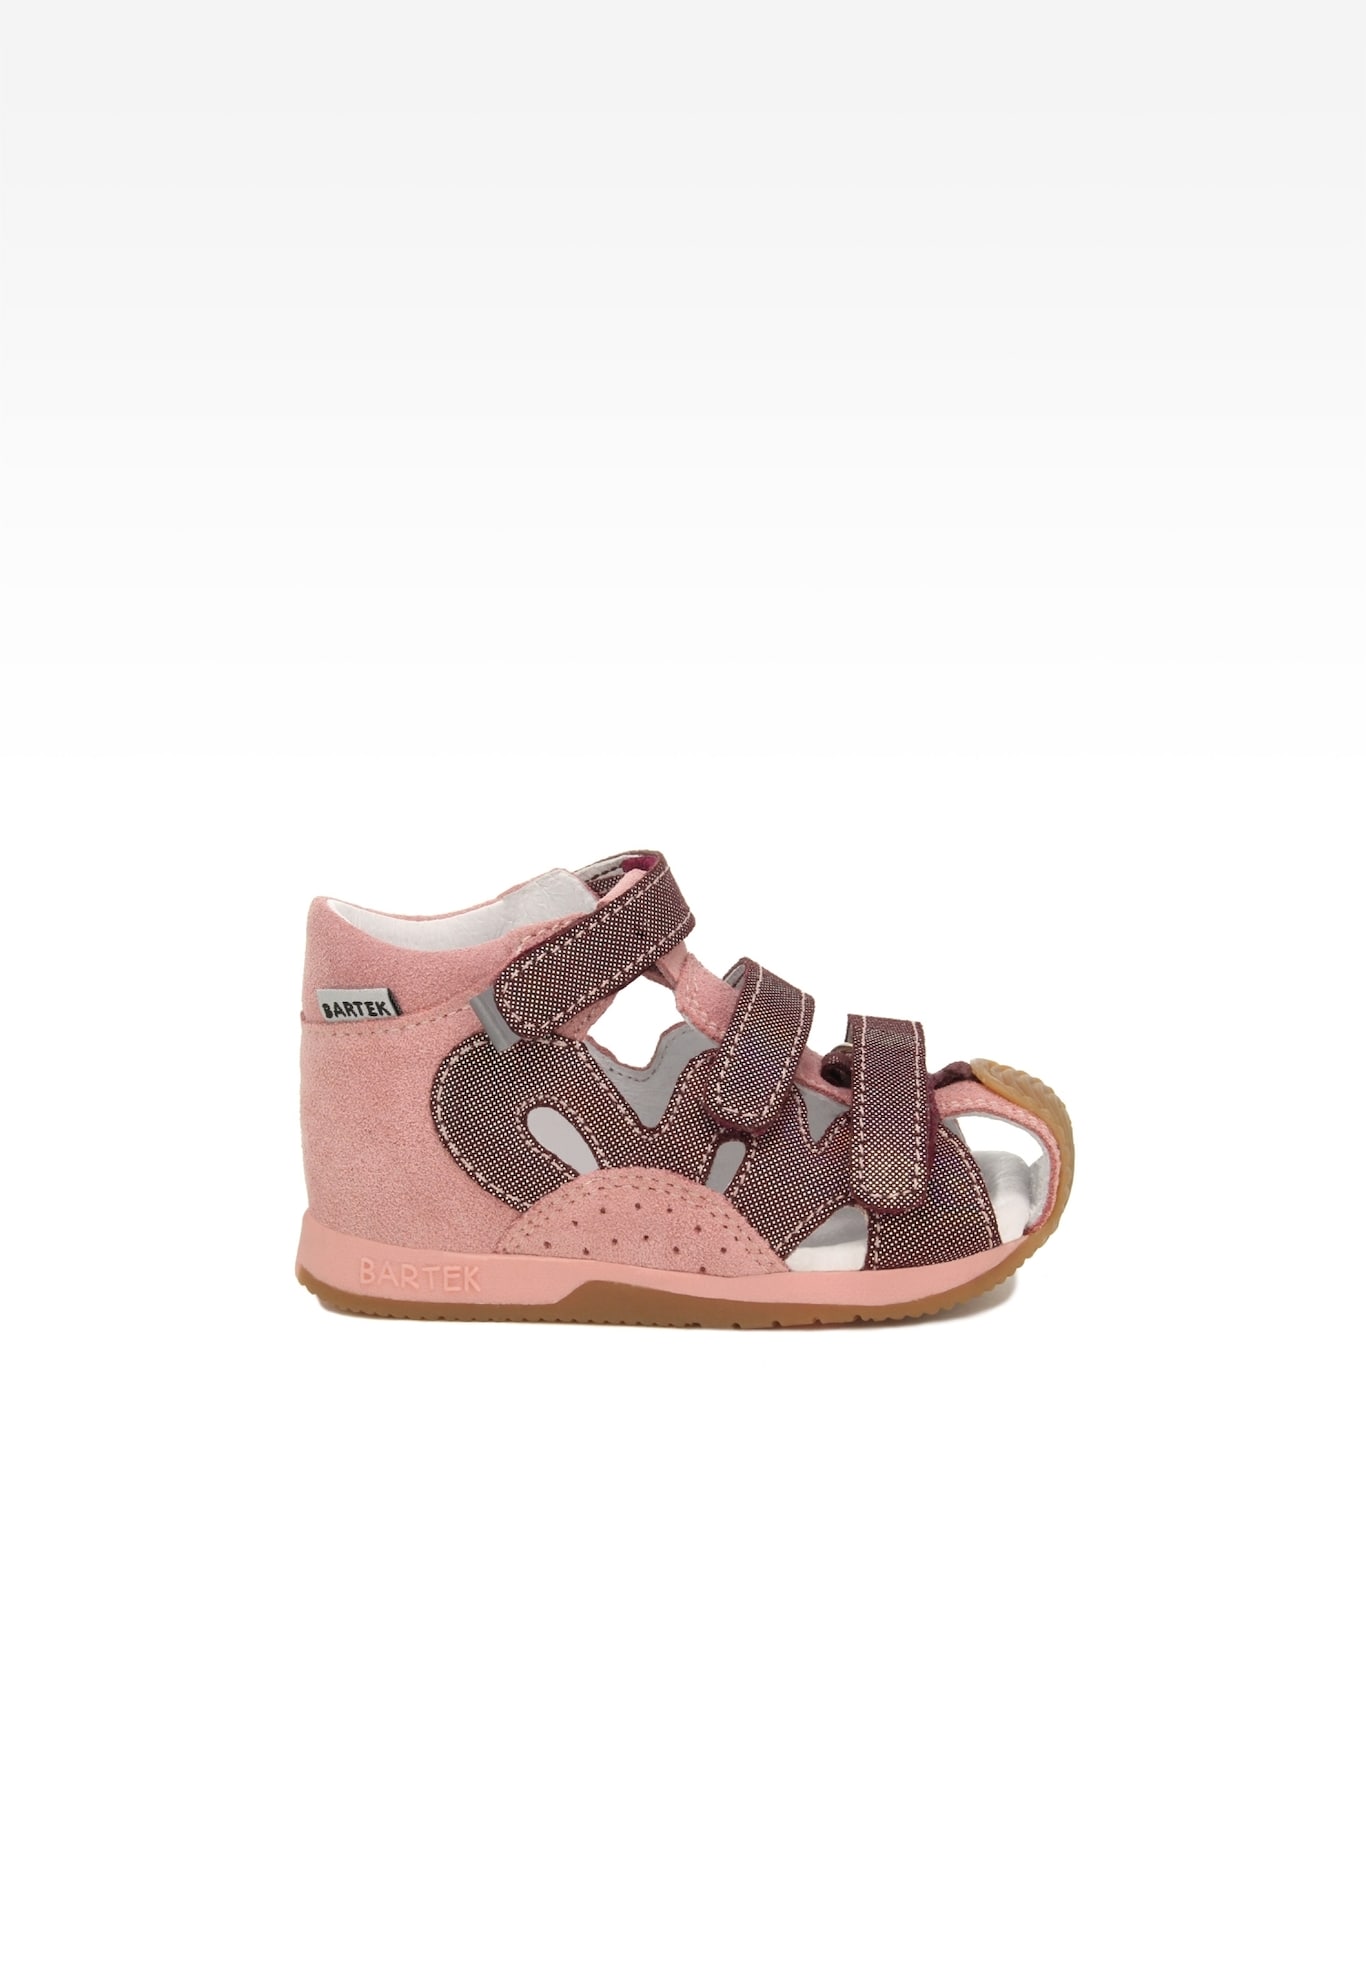 Sandały BARTEK 81021-007, dla dziewcząt, różowo-bordowy